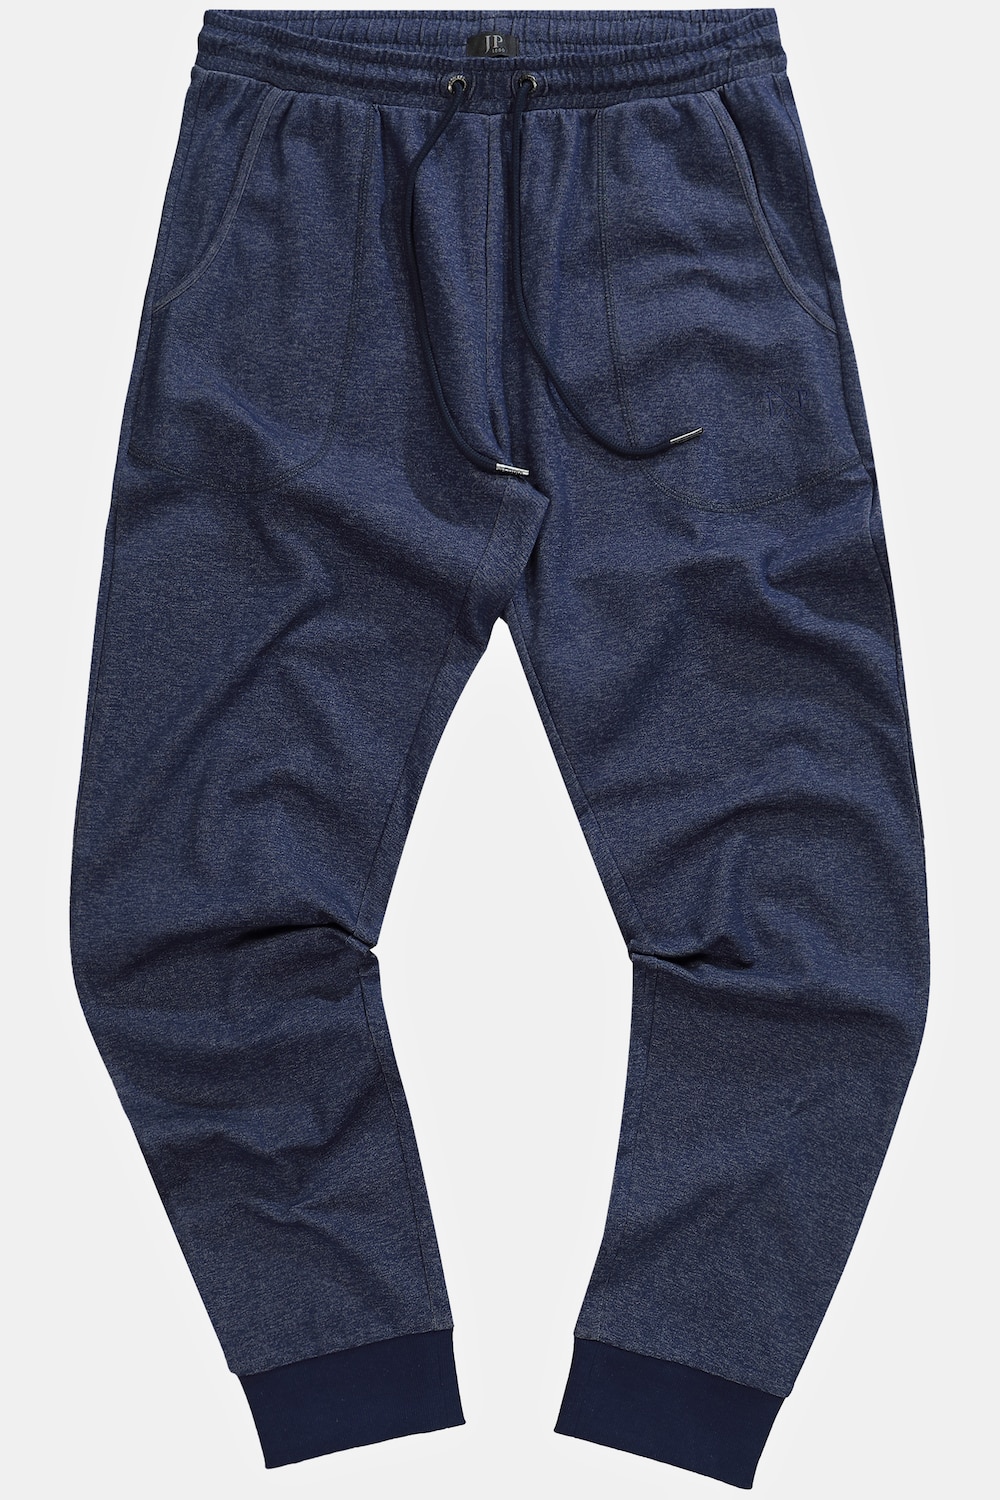 Grote Maten Pyjamabroek, Heren, blauw, Maat: L, Katoen, JP1880